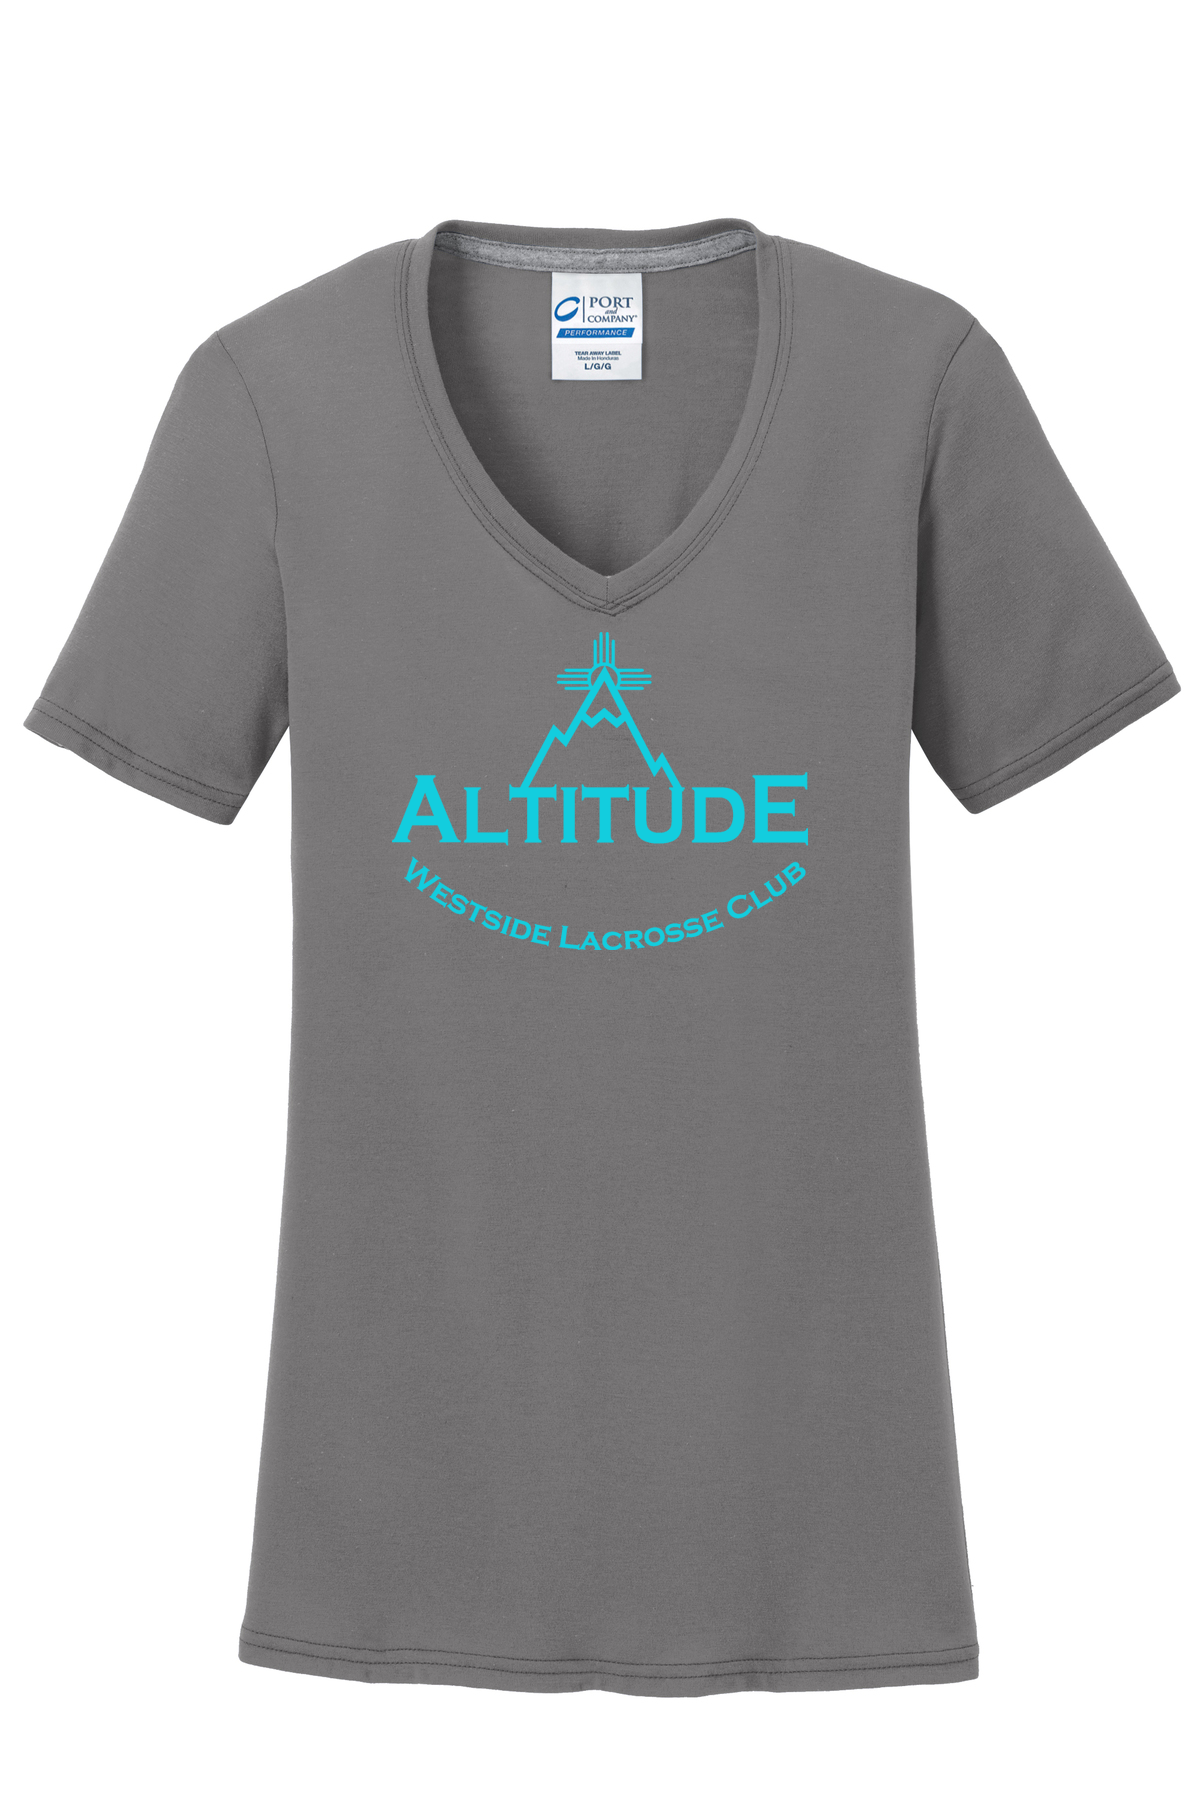 Westside Altitude Lacrosse Women's T-Shirt